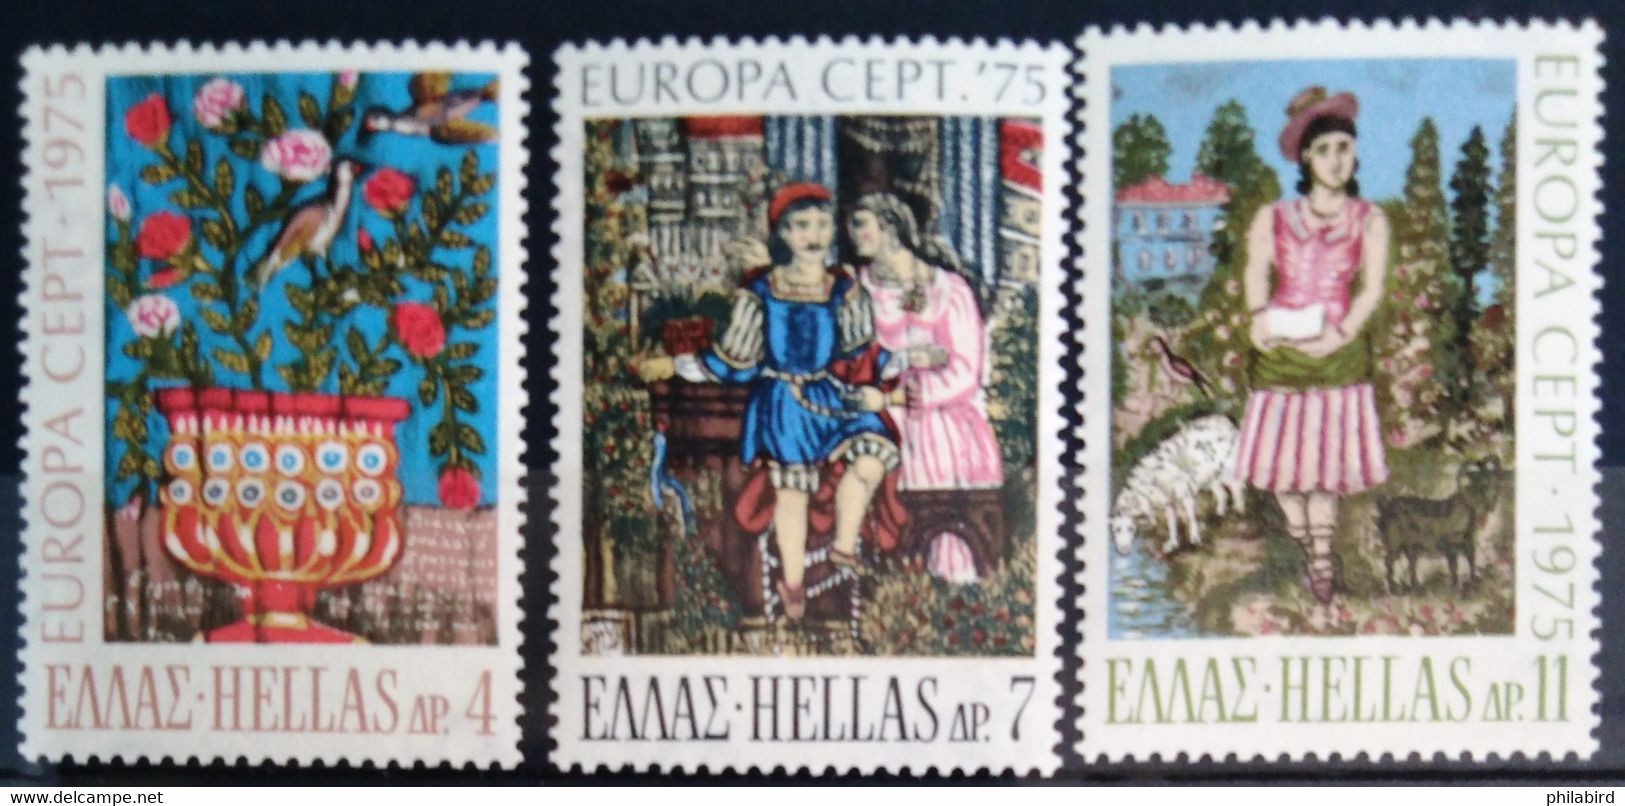 EUROPA 1975 - GRECE                    N° 1176/1178                        NEUF** - 1975